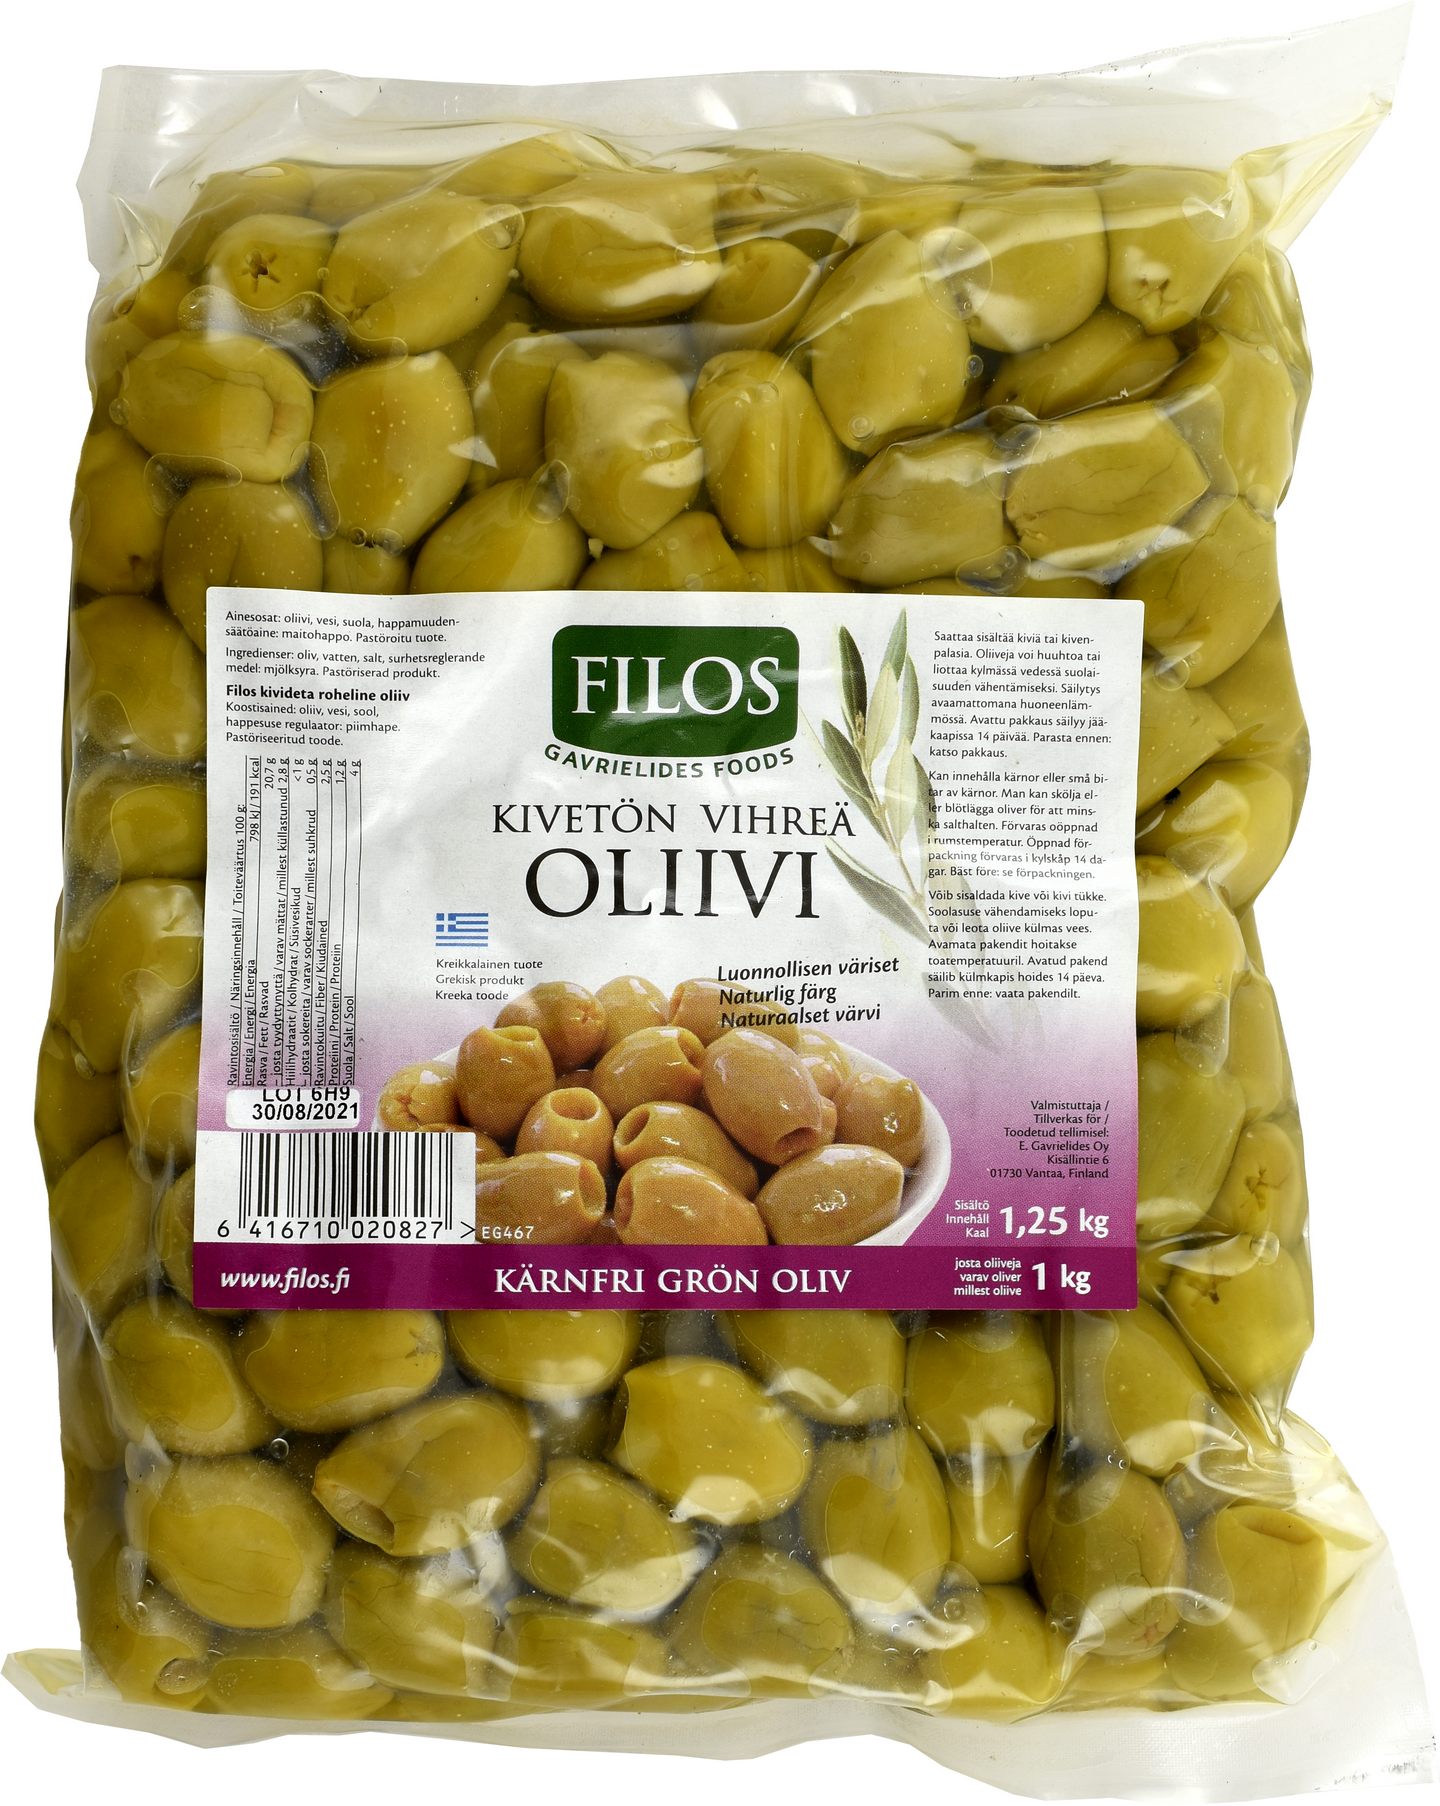 Filos vihreä oliivi kivetön 1,25/ 1kg